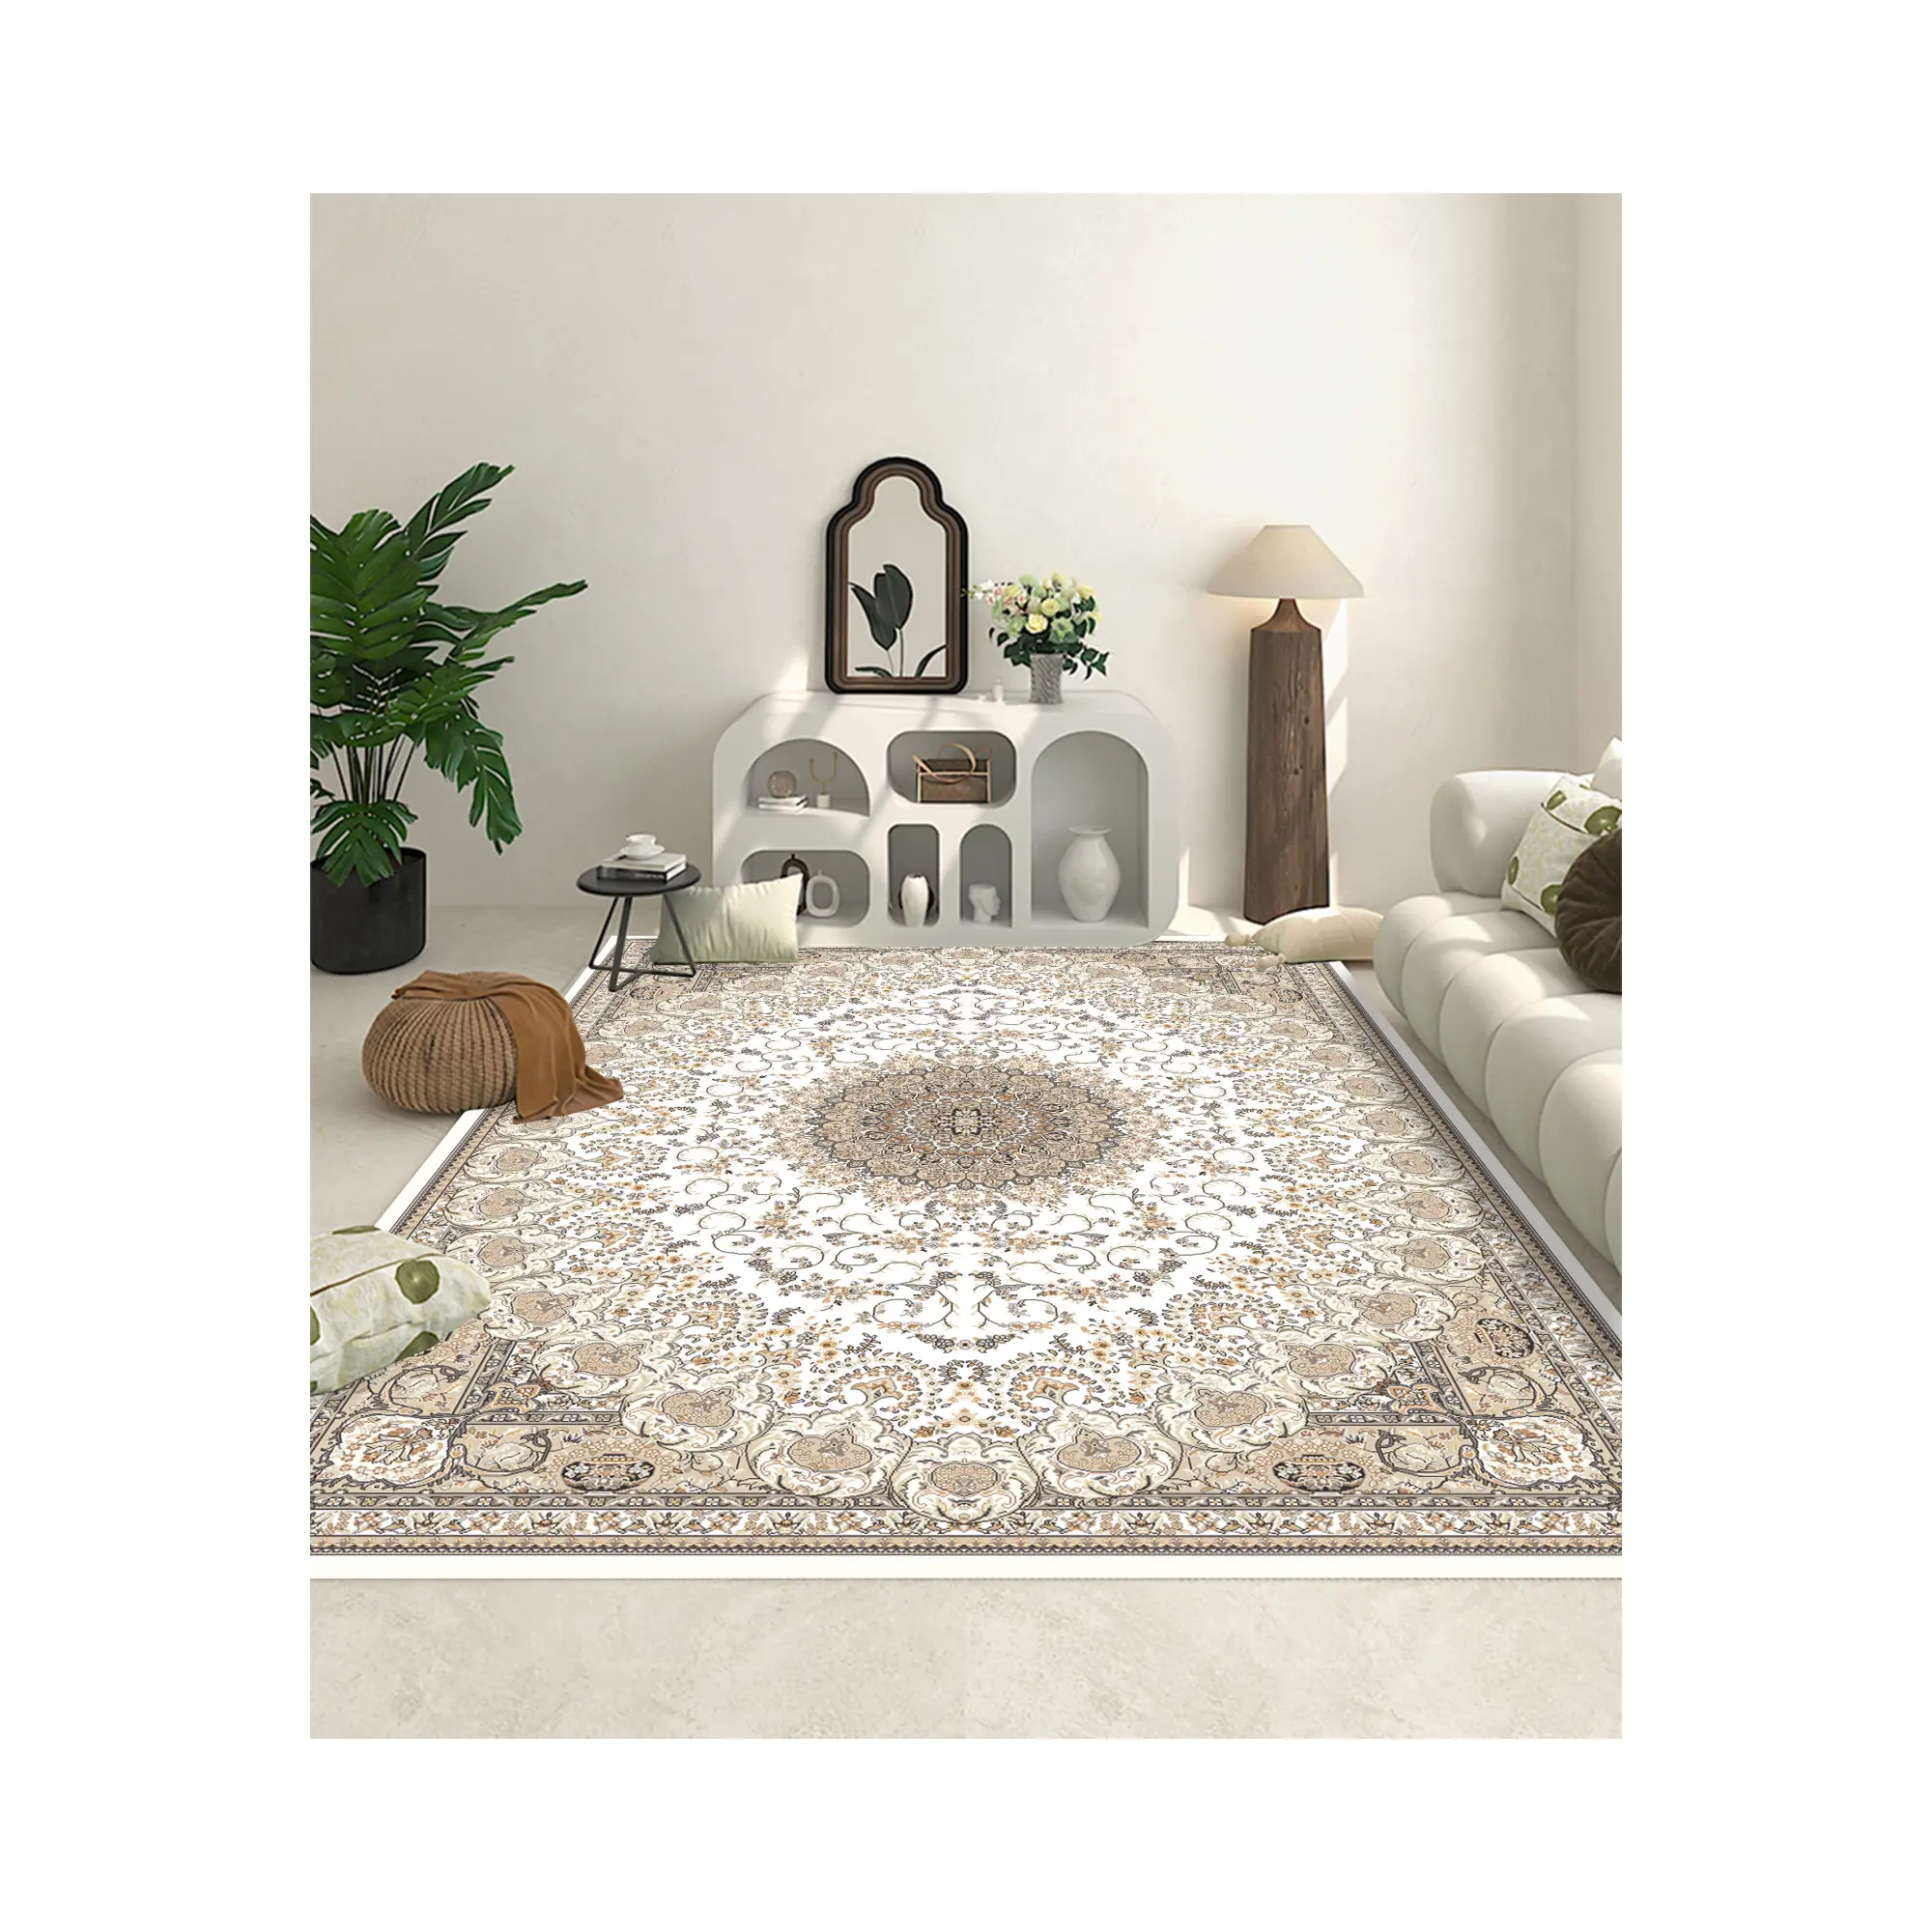 Venda quente boa qualidade chegada nova Arábia tapetes e tapetes personalizados design moderno tapetes sala de estar tapete grande